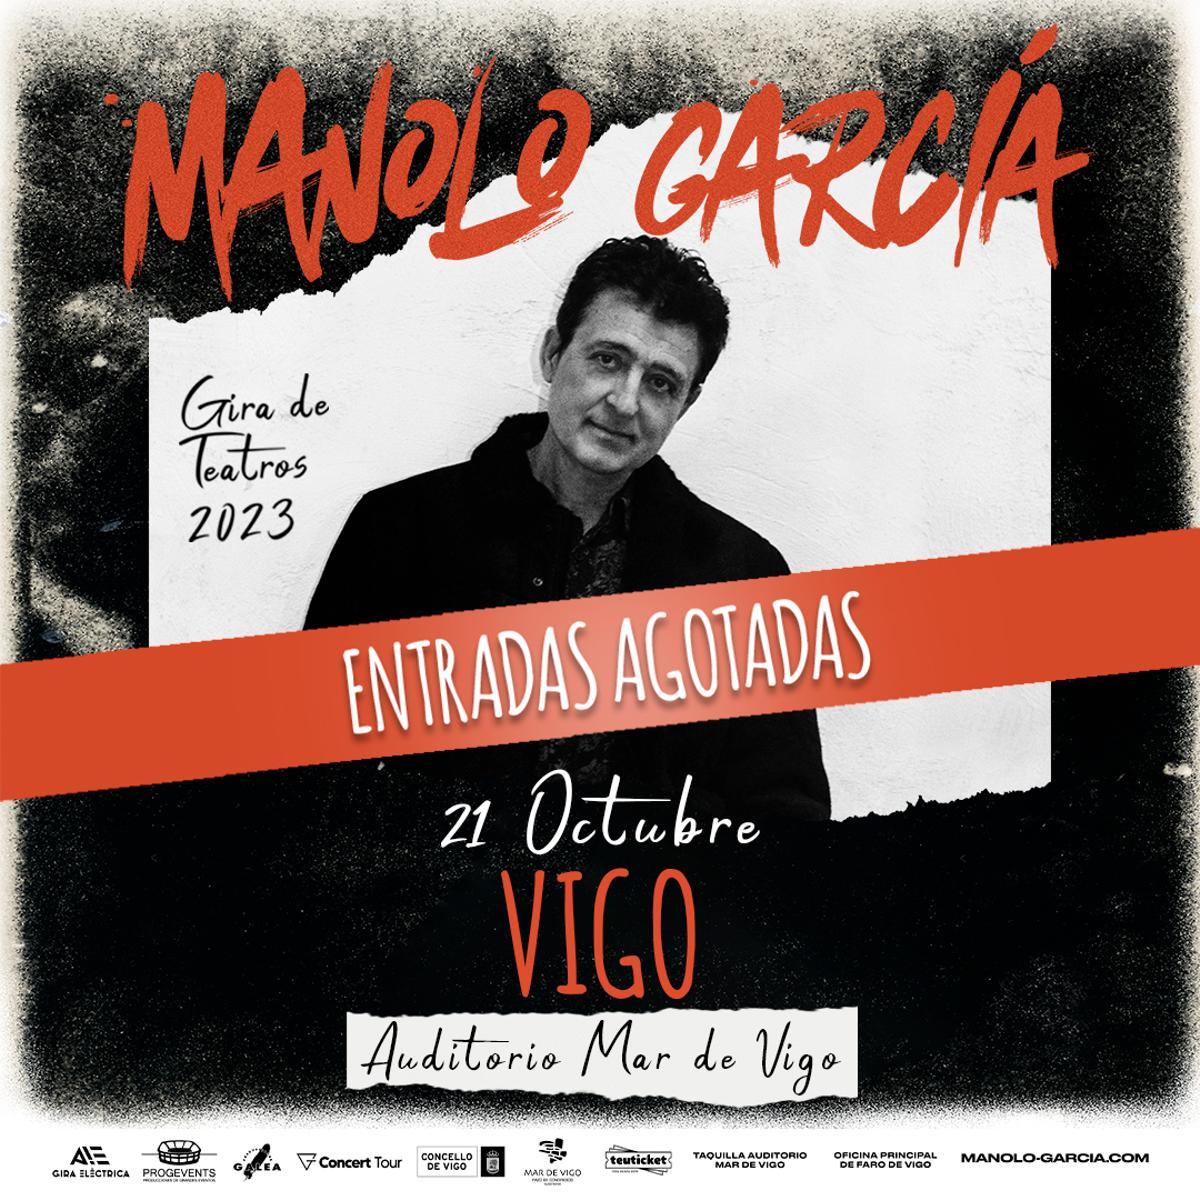 Cartel del concierto en Vigo